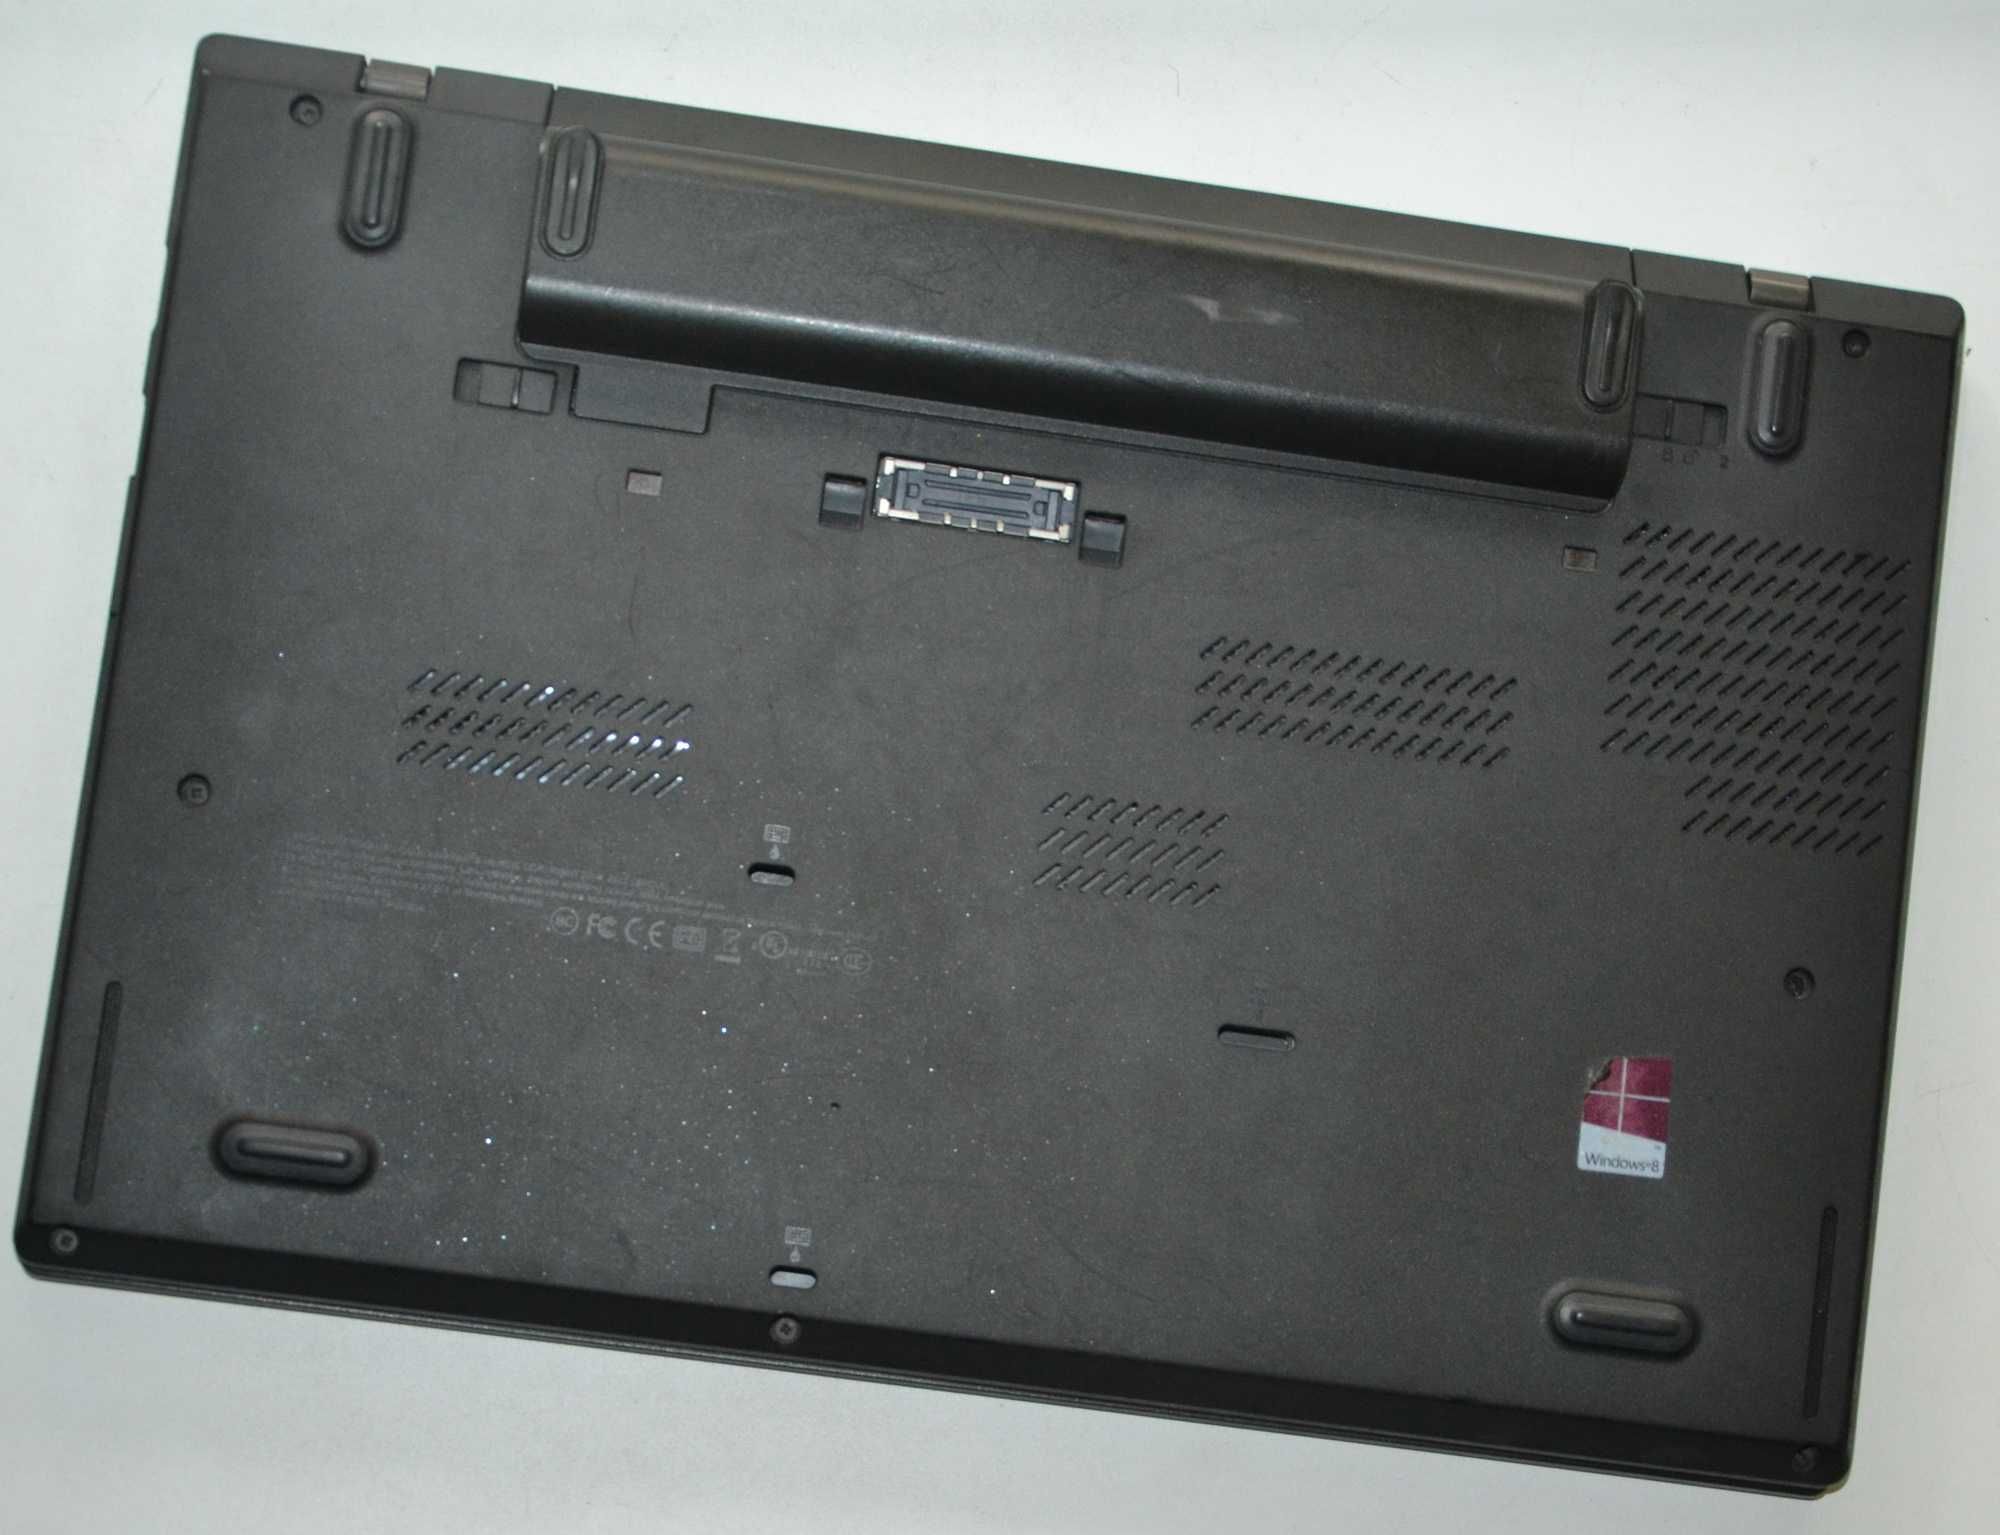 Ноутбук Lenovo ThinkPad T440 i5-4300U 1.9-2.6GHz 8Gb/ SSD 128Gb 14"